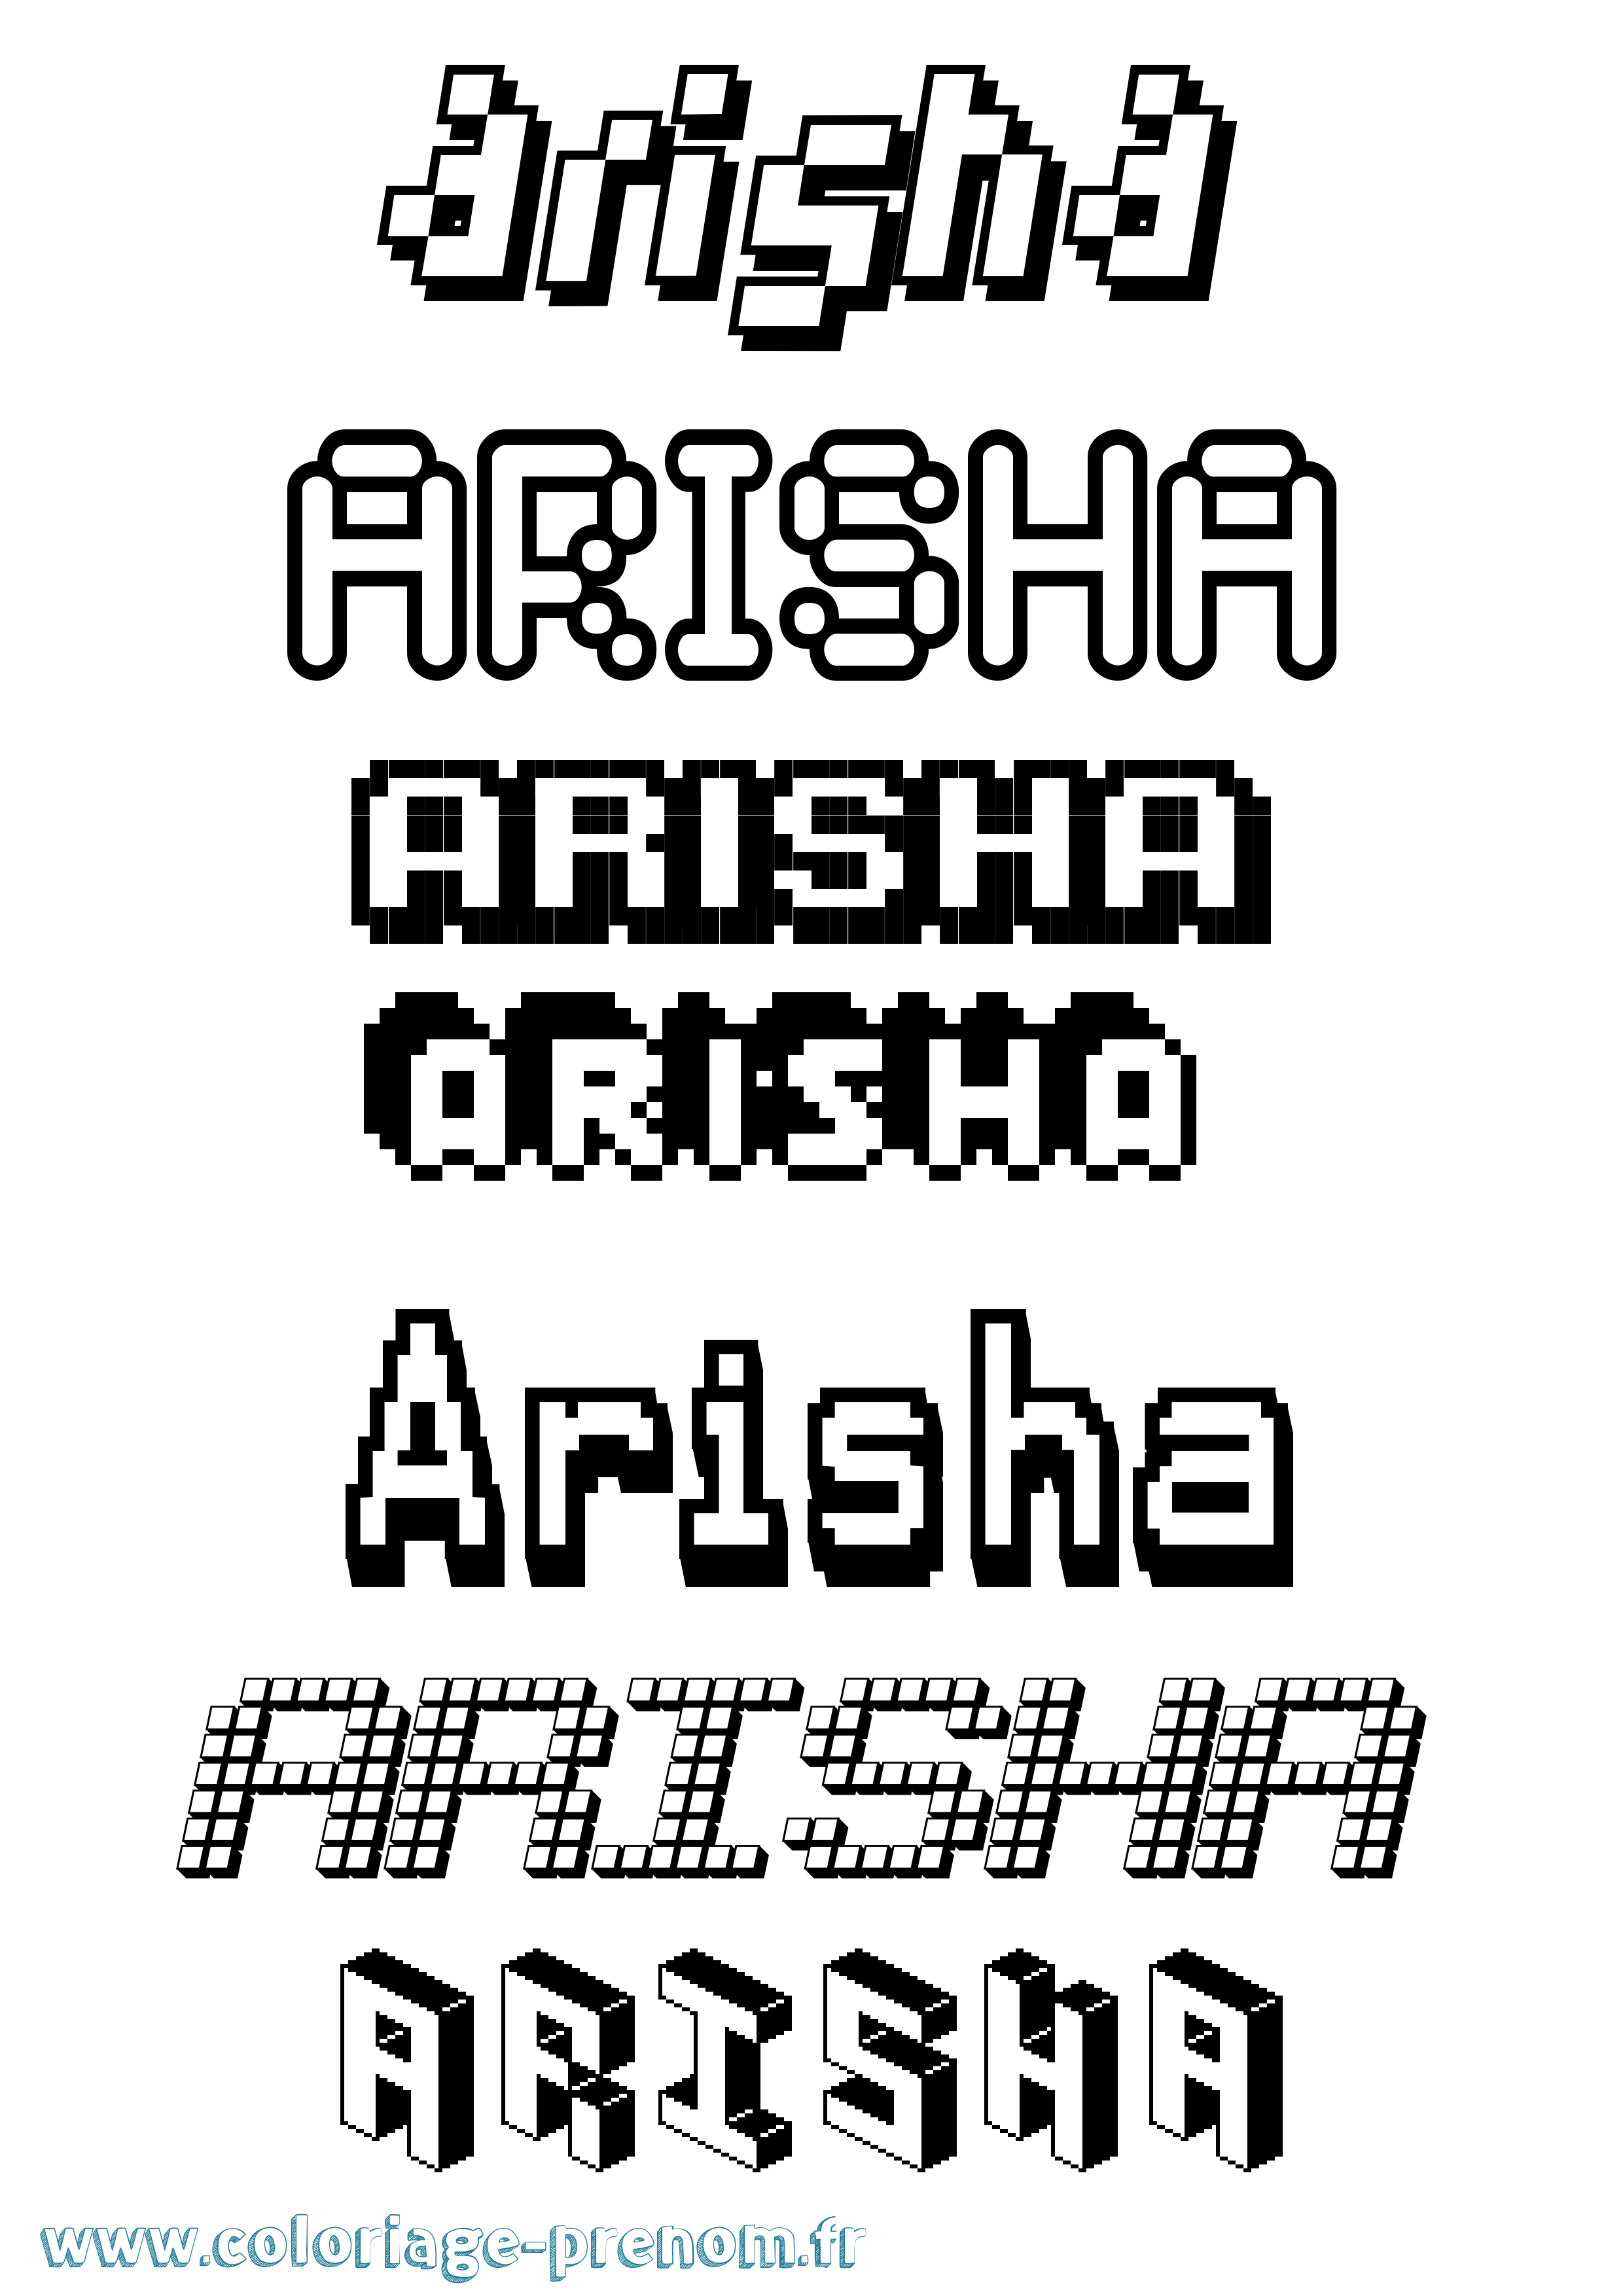 Coloriage prénom Arisha Pixel